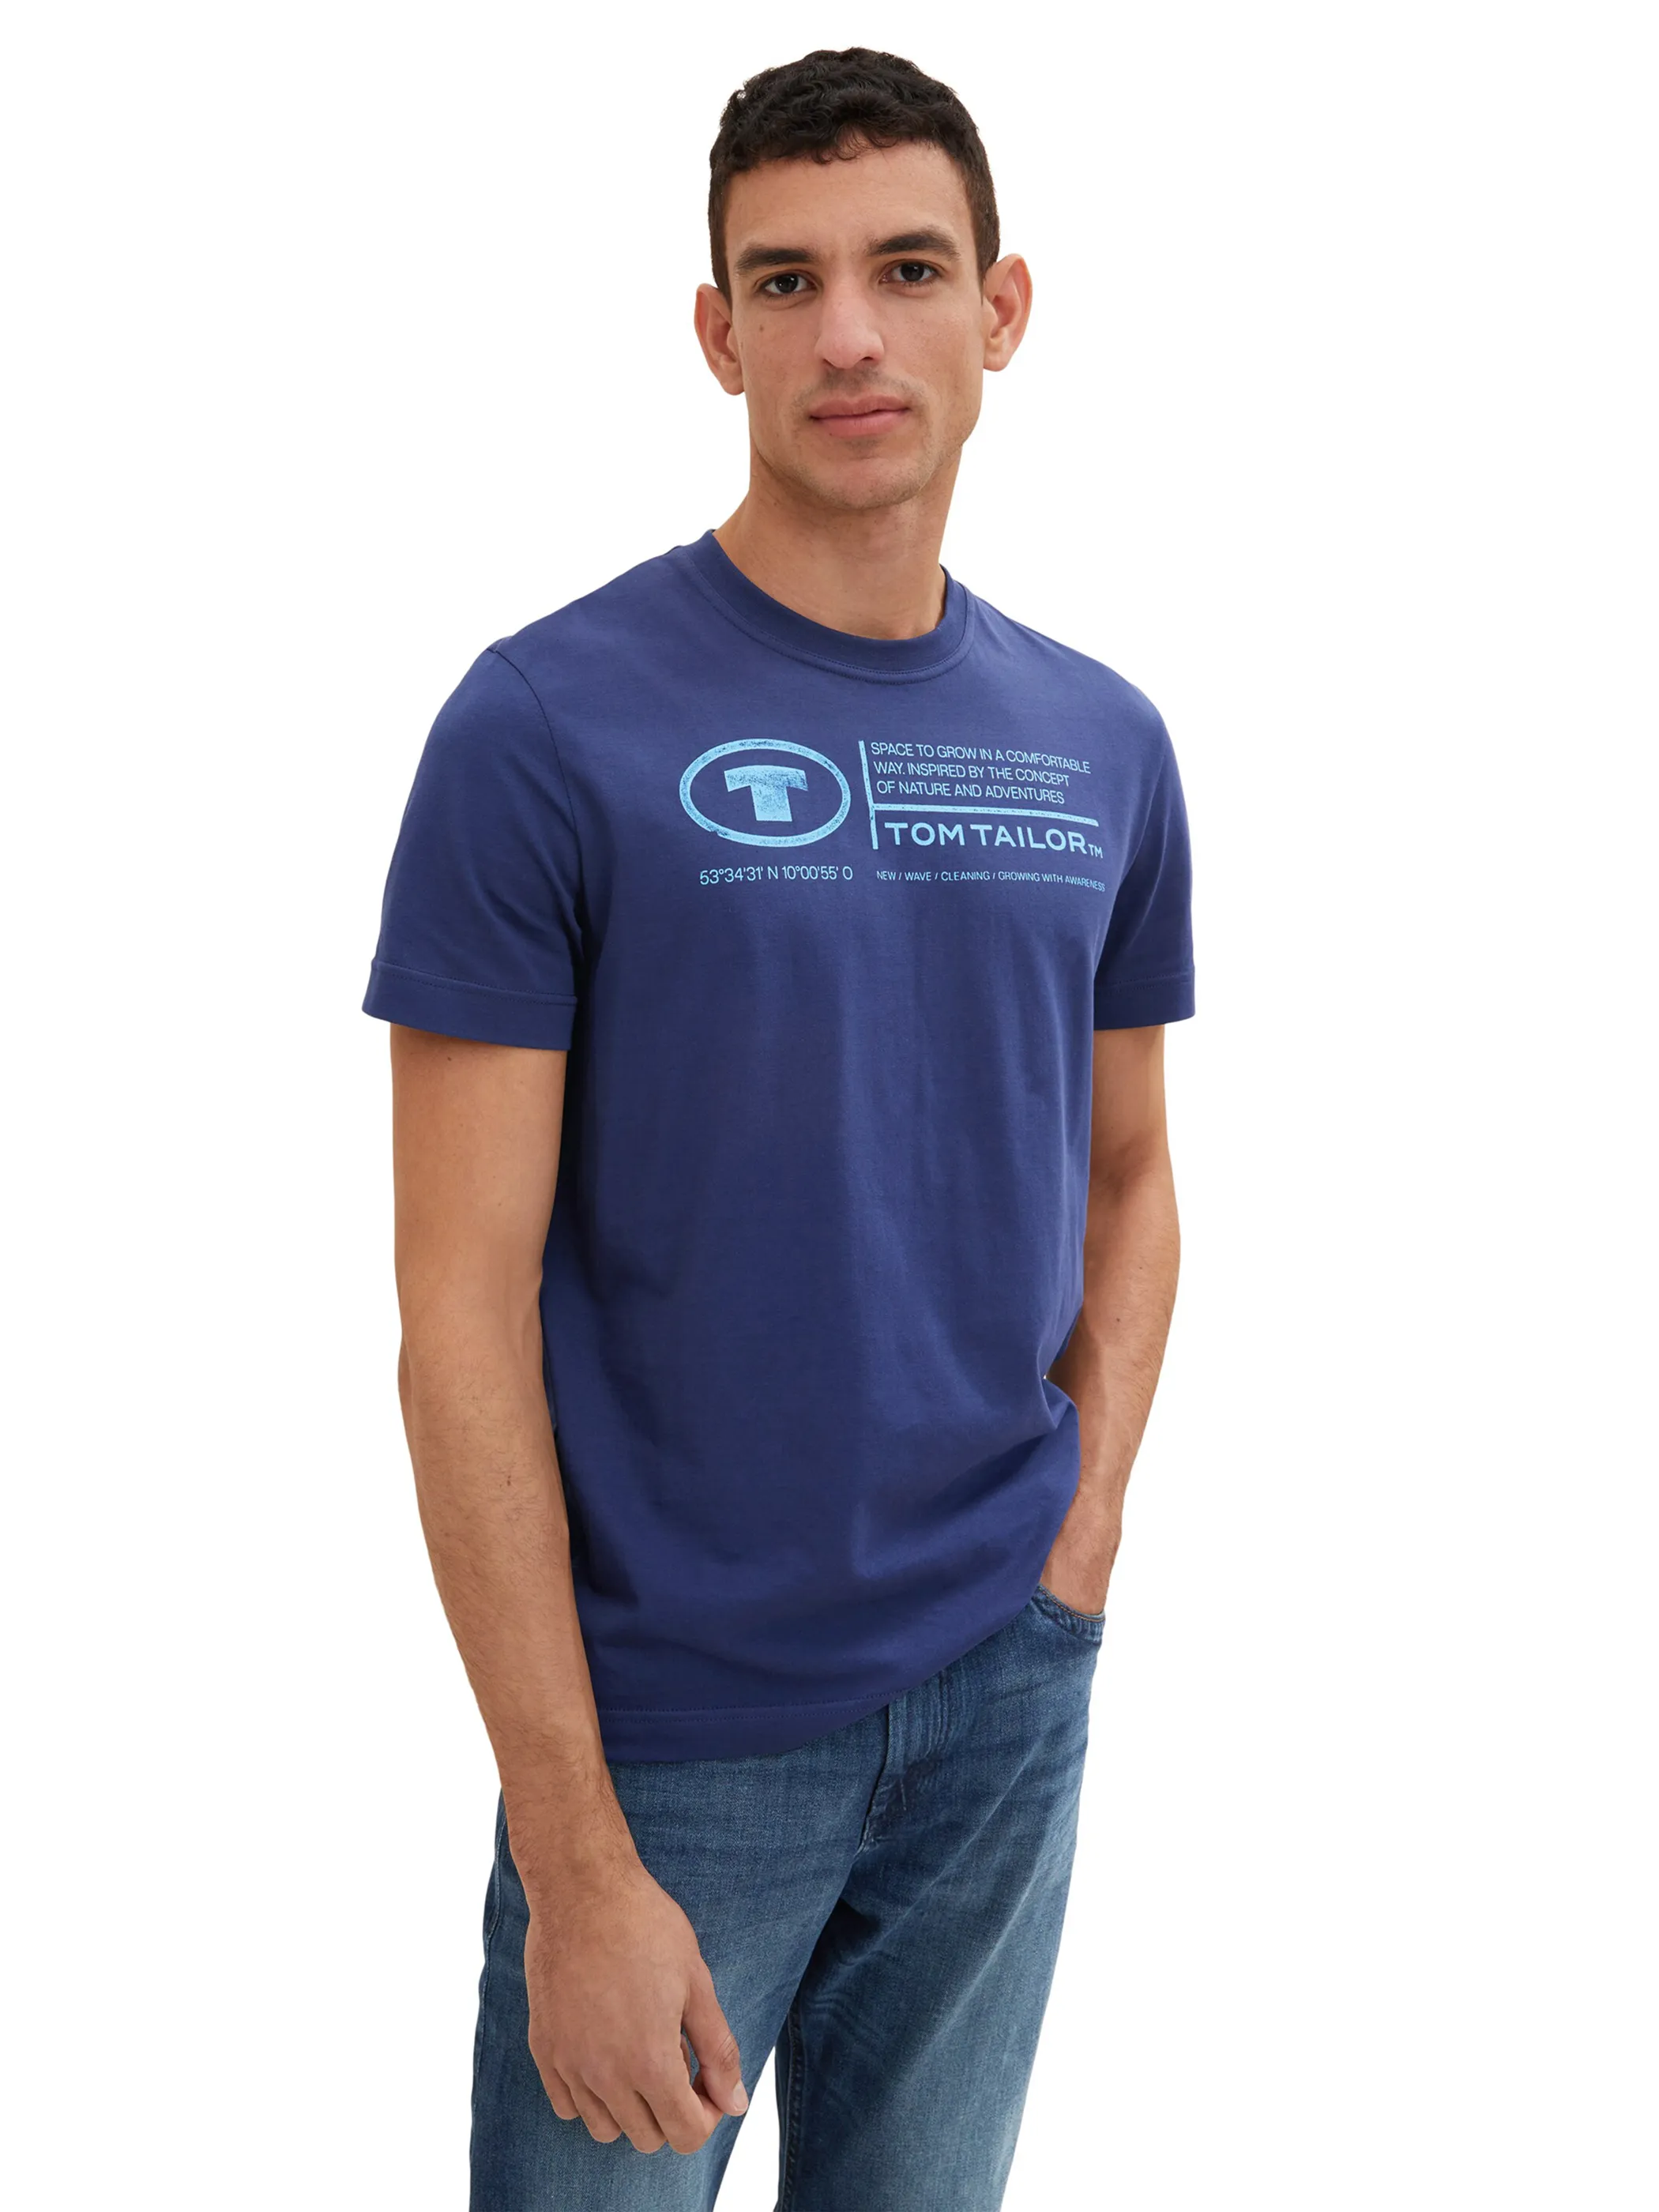 Tom Tailor 1035611 NOS printed crewneck t-shirt Blau 874939 10311 3